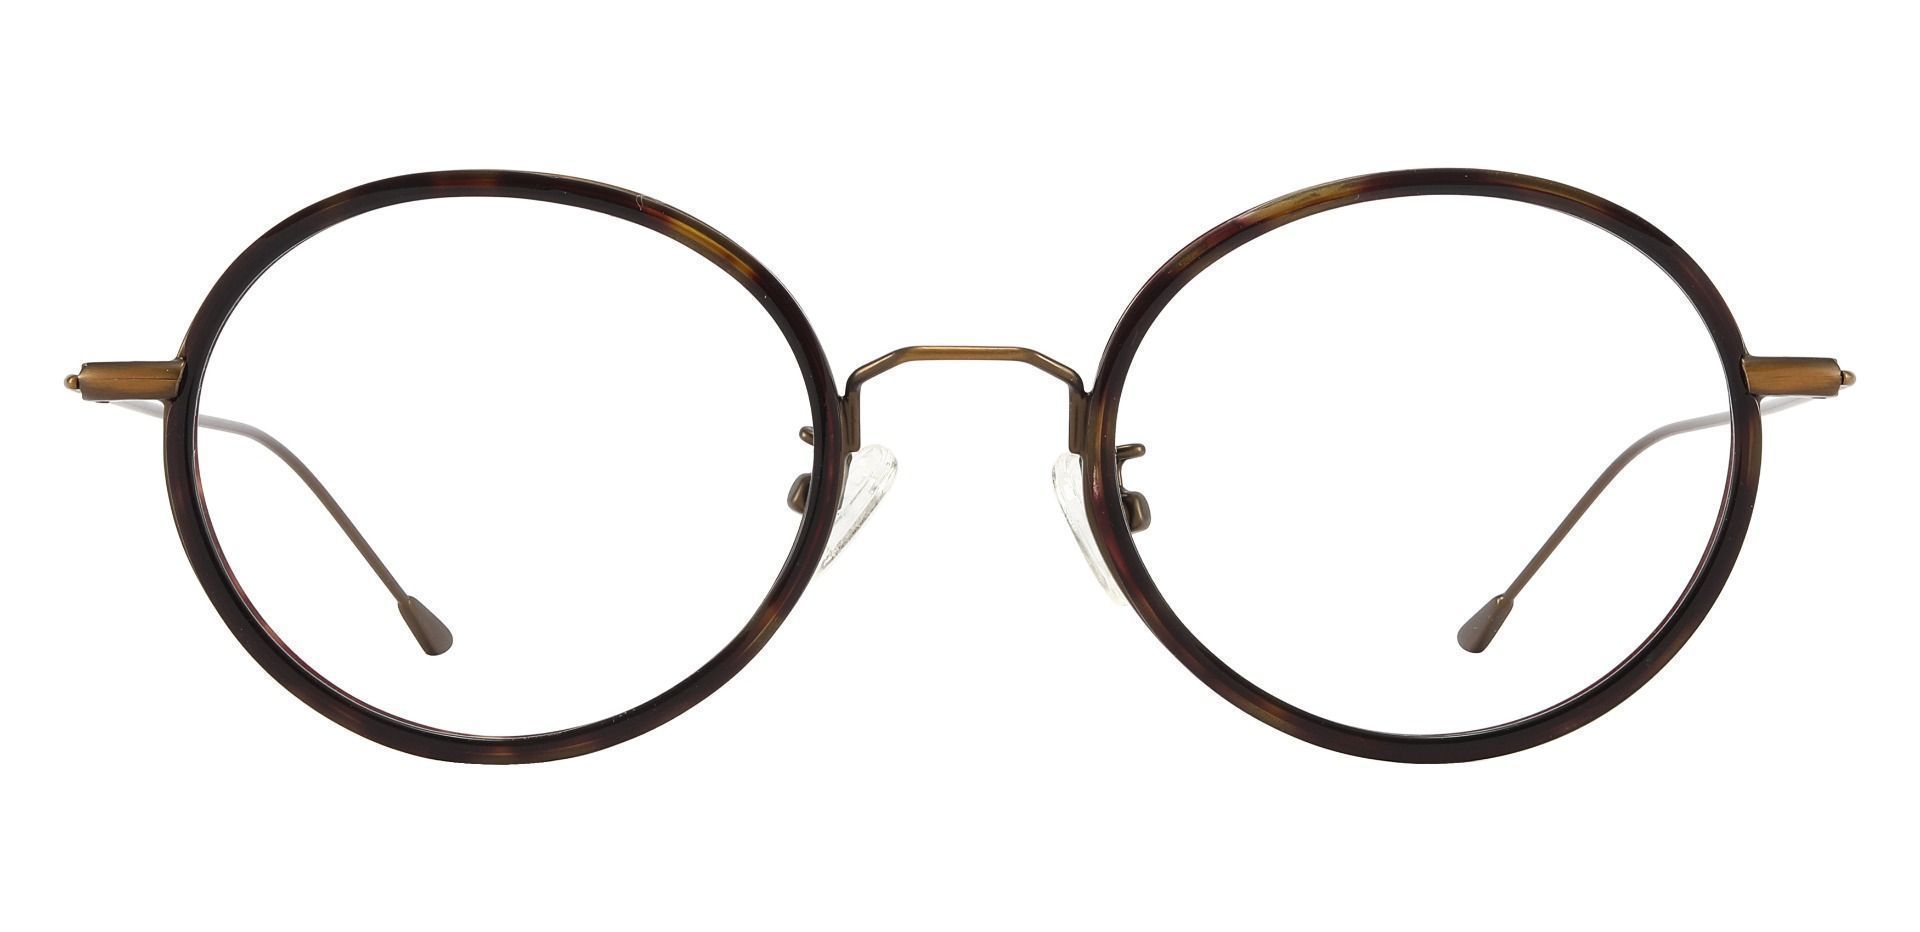 Malverne Oval Non-Rx Glasses - Tortoise